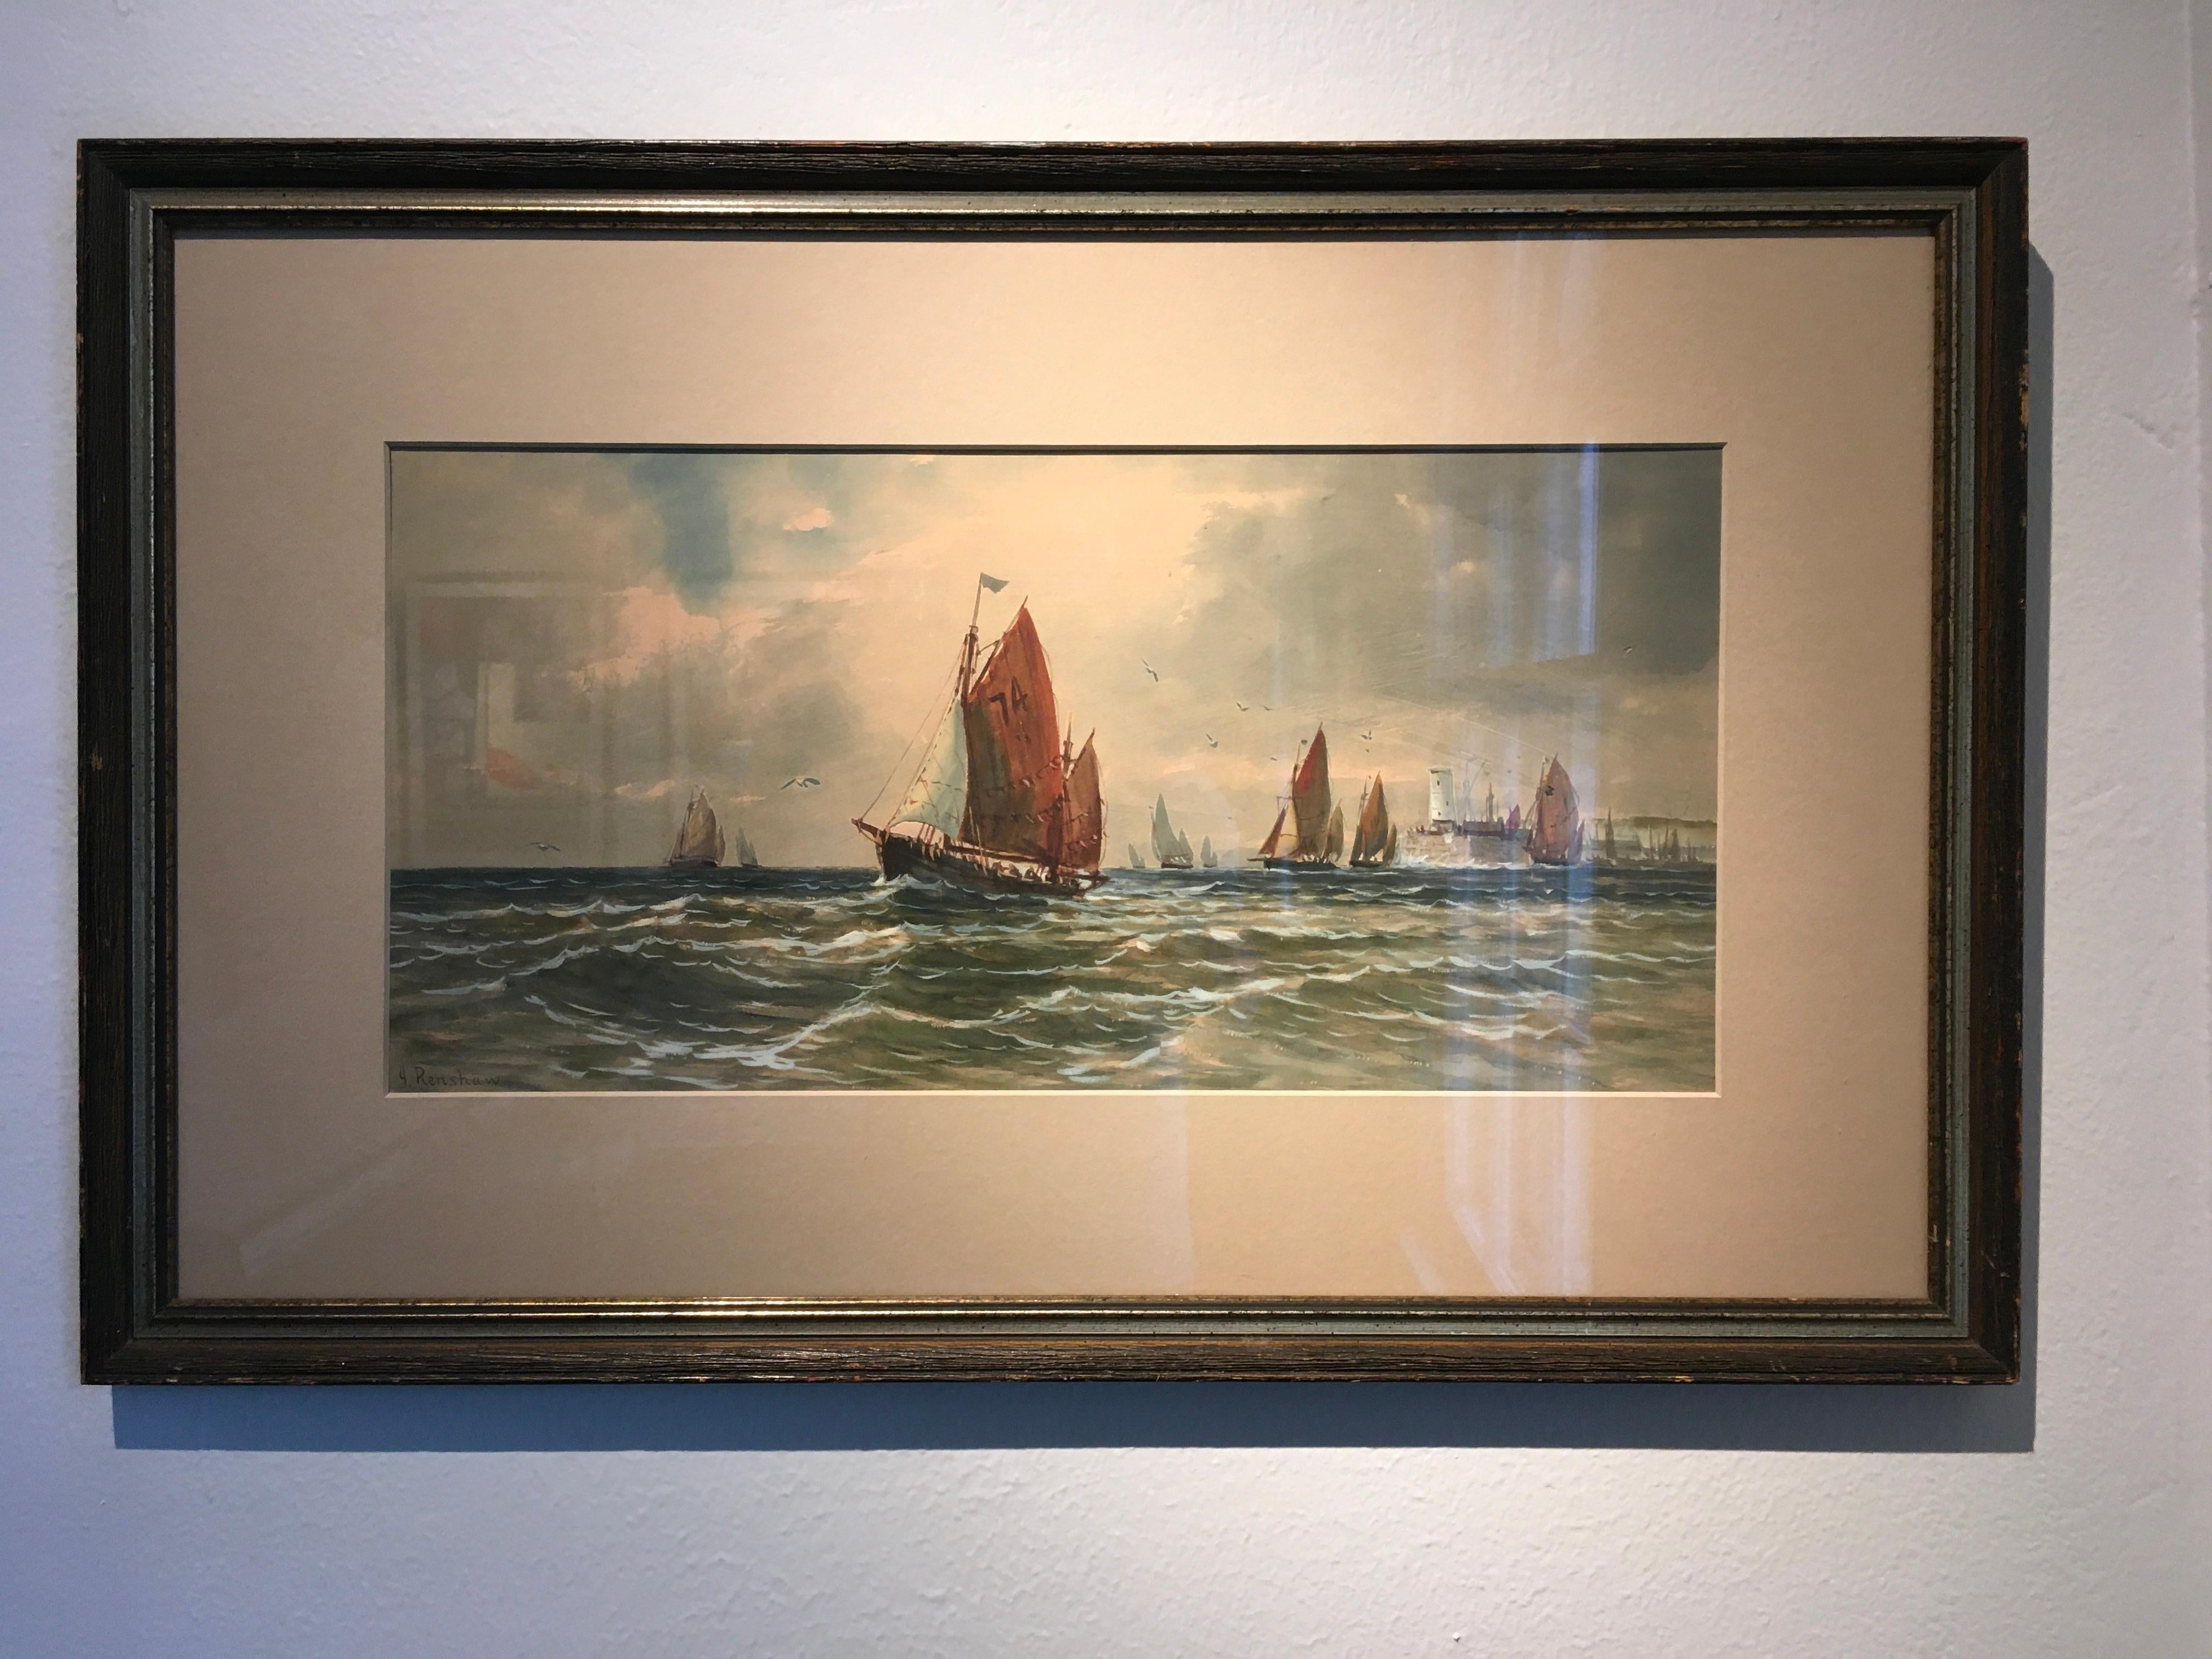 Dieses 9,25" x 19,375" große Aquarell ist signiert und wird J. Renshaw (möglicherweise Joshua Renshaw) zugeschrieben. Das Gemälde zeigt eine Seelandschaft mit Segelbooten auf windigem Wasser. Es gibt etwa sechs Segelboote, die deutlich dargestellt